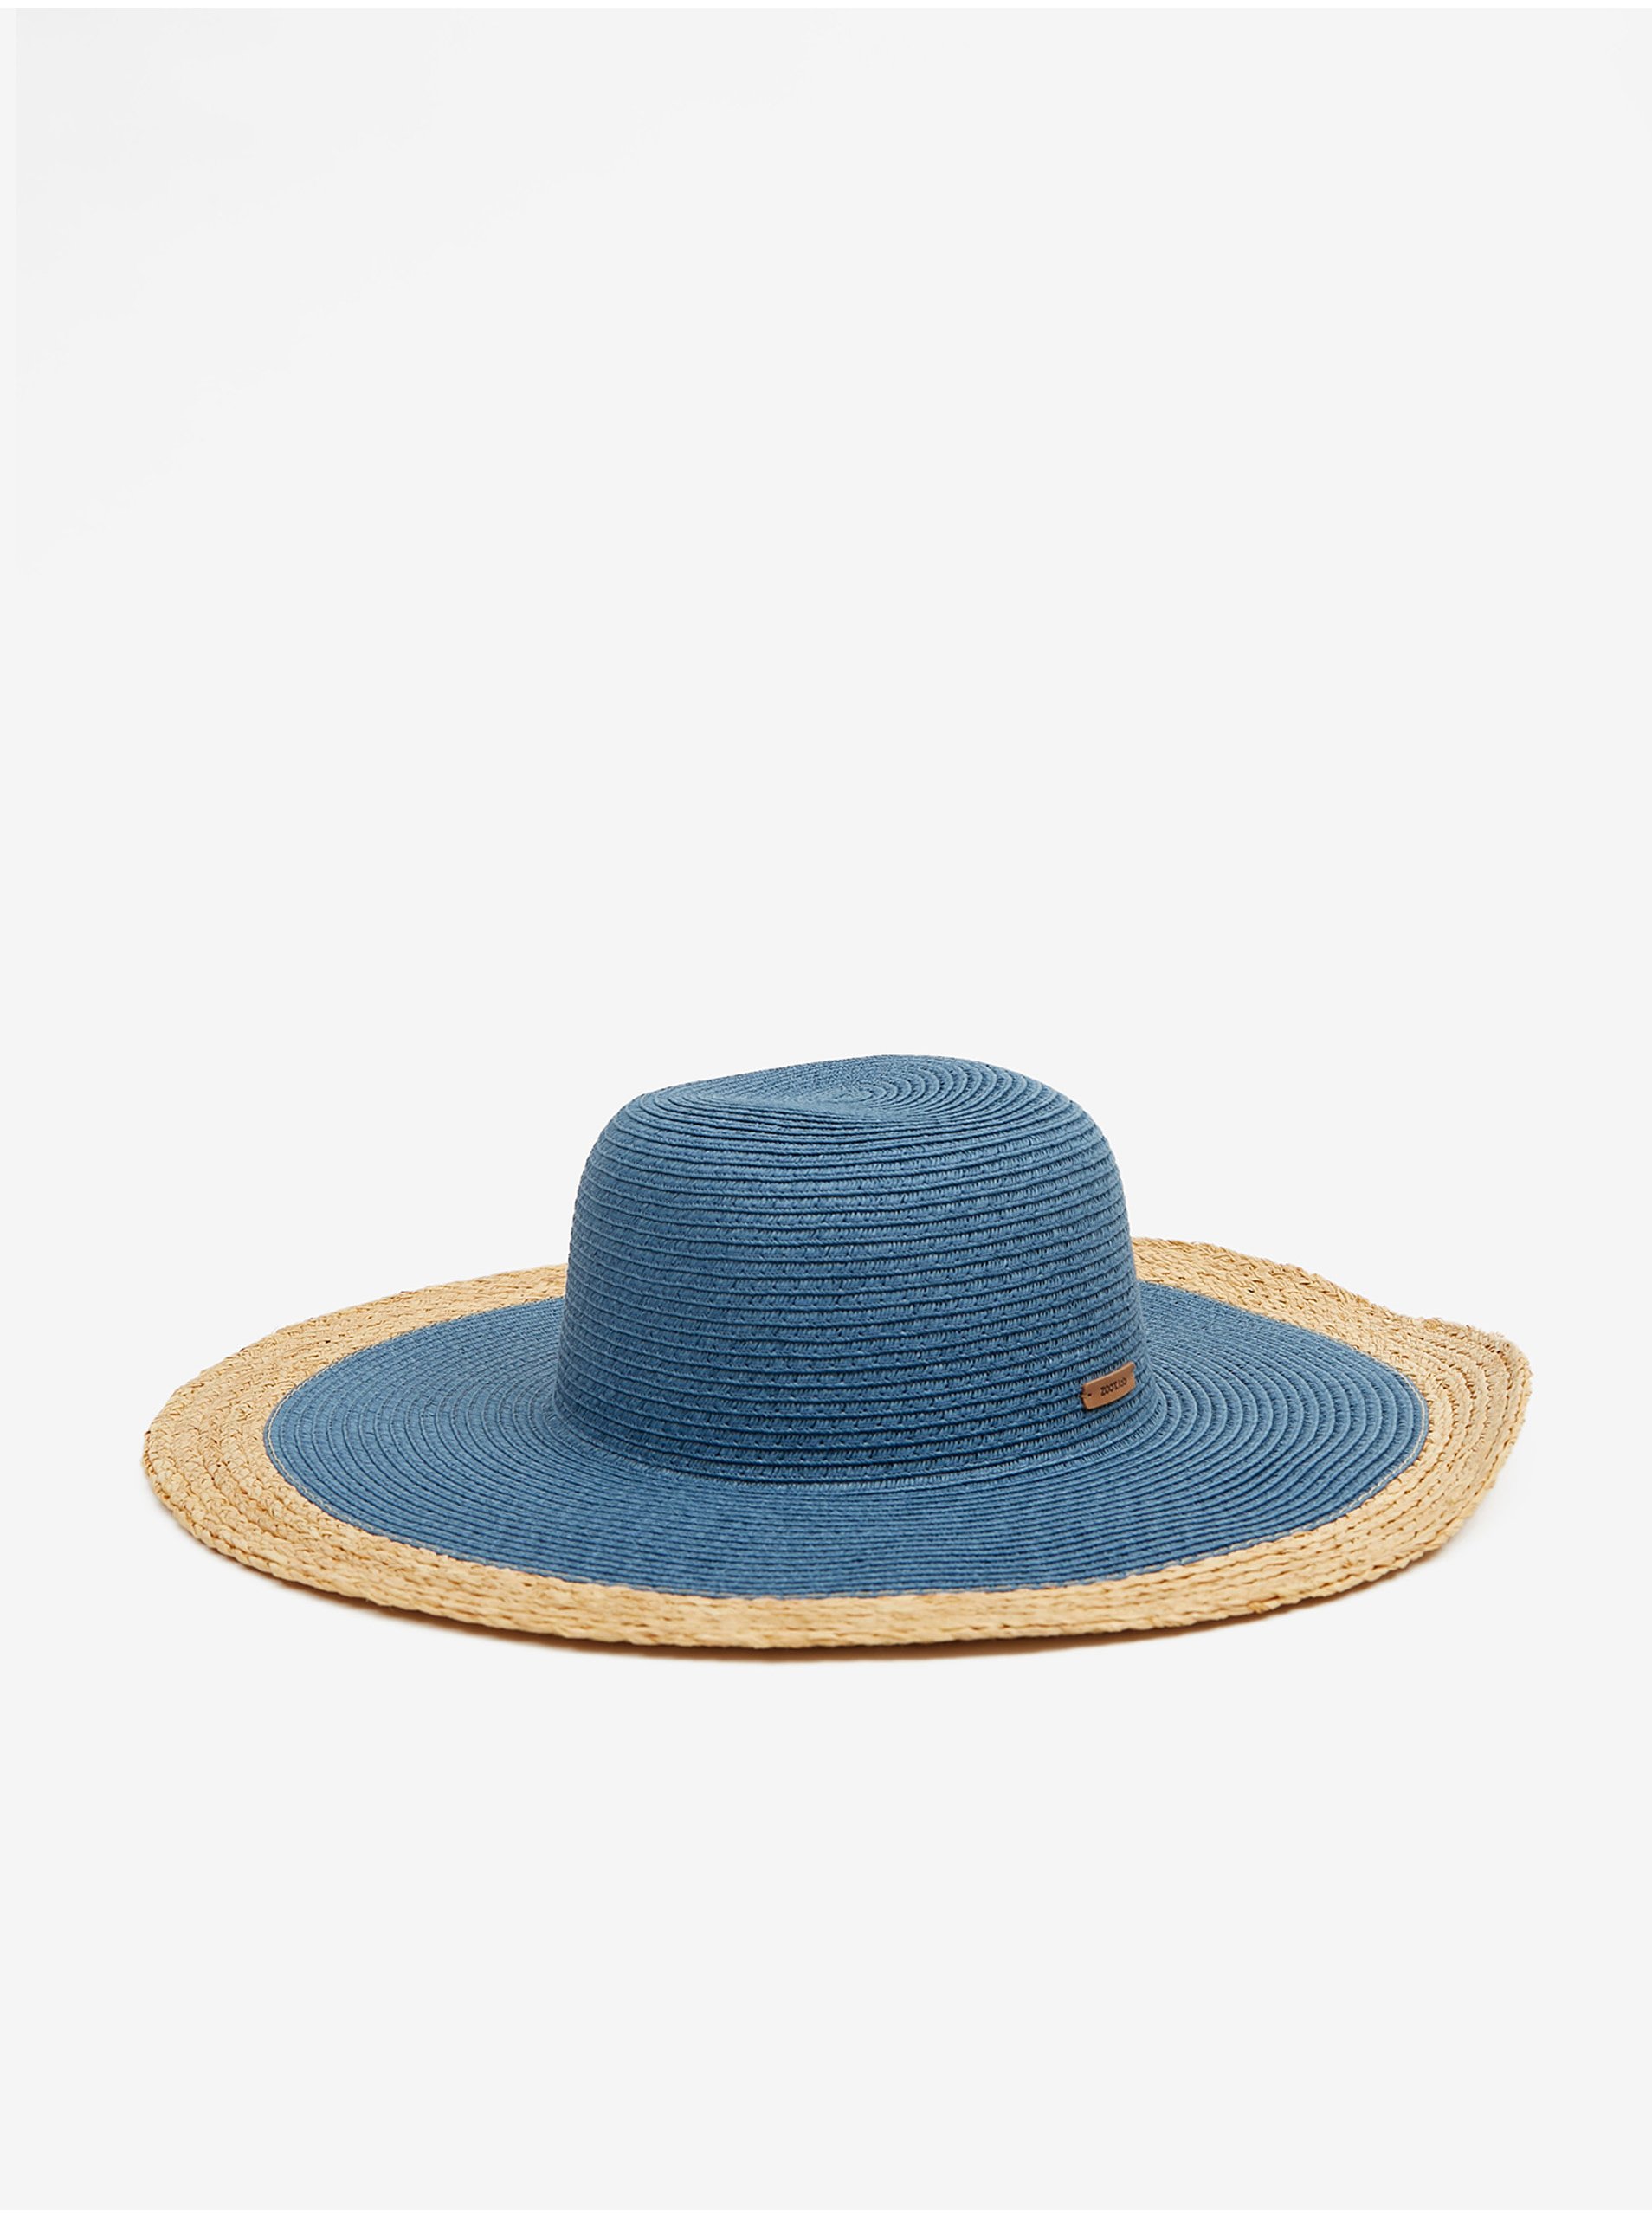 E-shop Hnědo-modrý dámský slaměný klobouk ZOOT.lab Lysbet